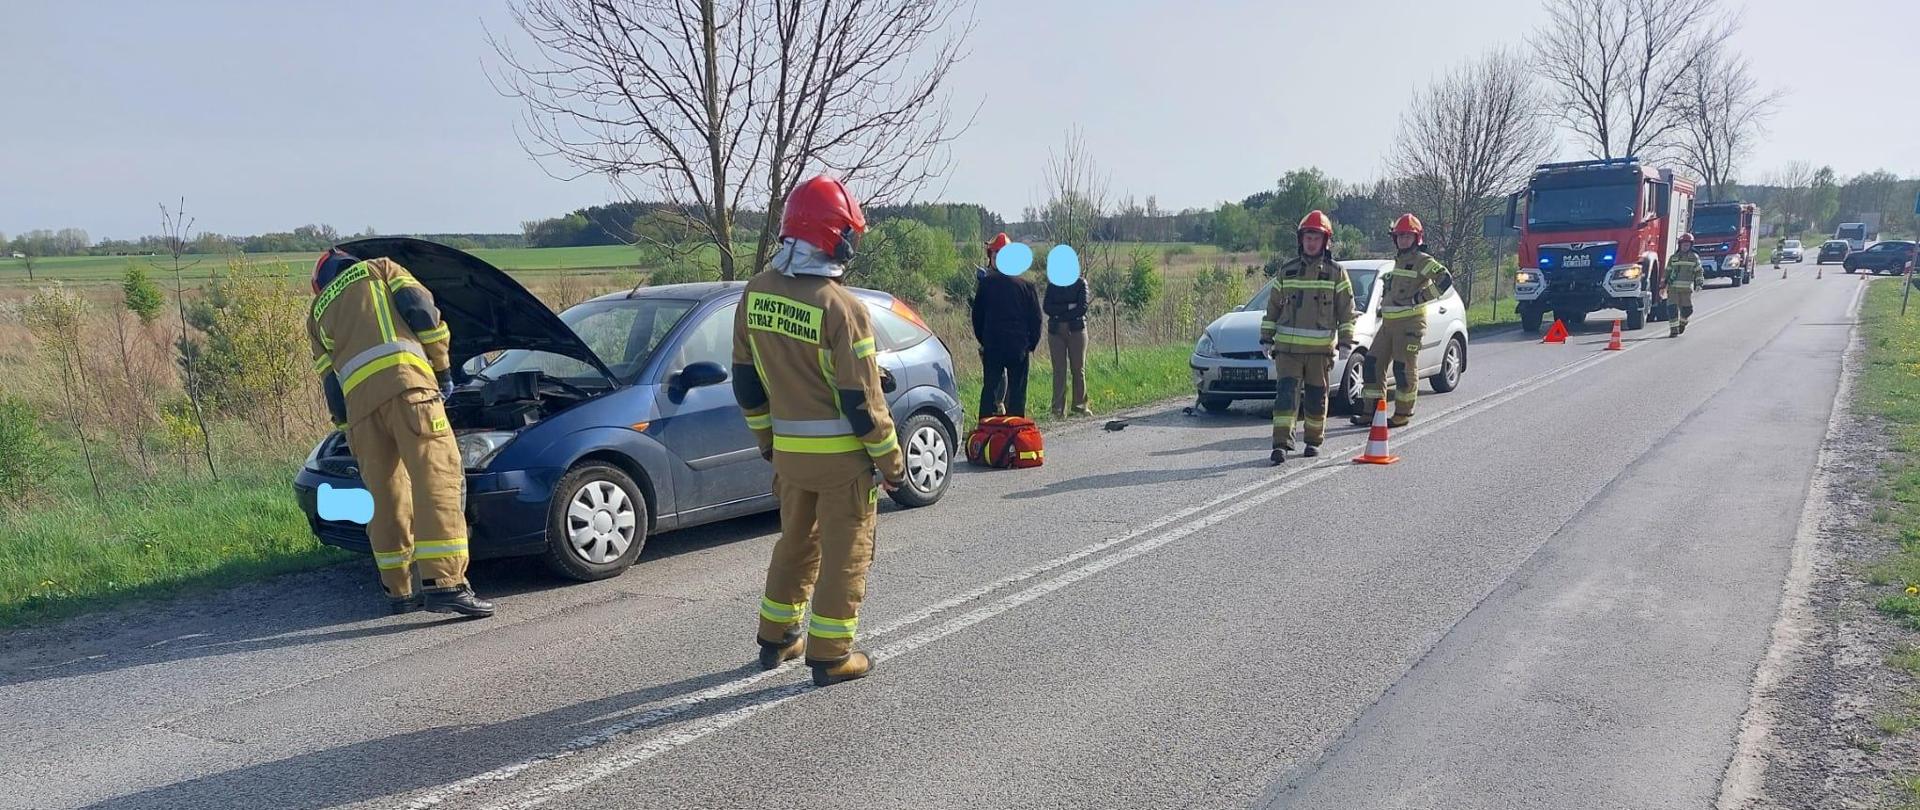 Strażacy podczas działań ratowniczo - gaśniczych w miejscowości Hajdaszek likwidują skutki zderzenia trzech pojazdów osobowych.